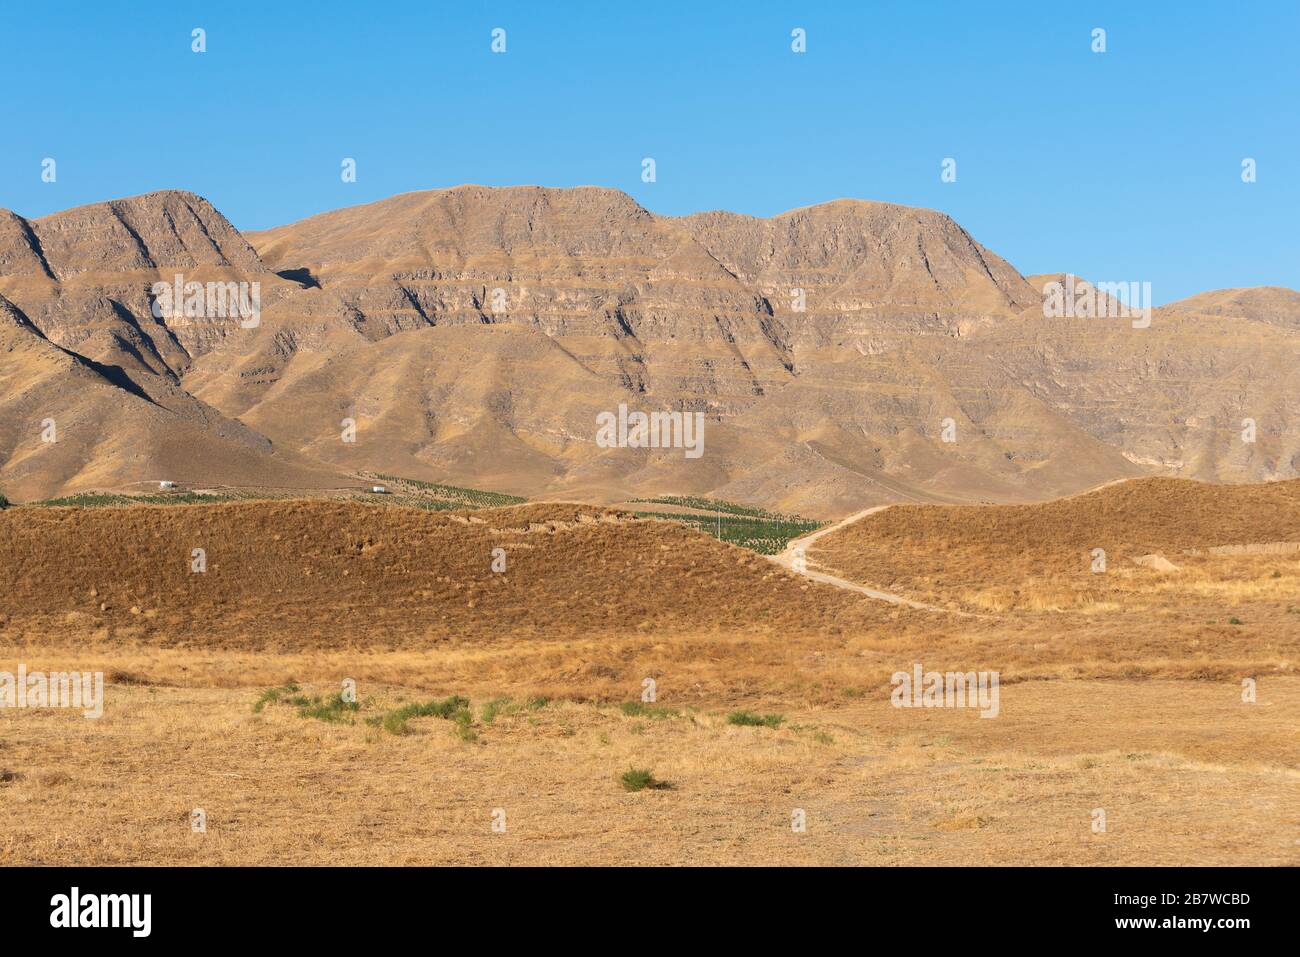 Turkmenistán topografía con Kopet Dag montaña y suelo seco. Las altas montañas están mirando hacia la frontera con Irán. Hermoso paisaje en Asia Central. Foto de stock